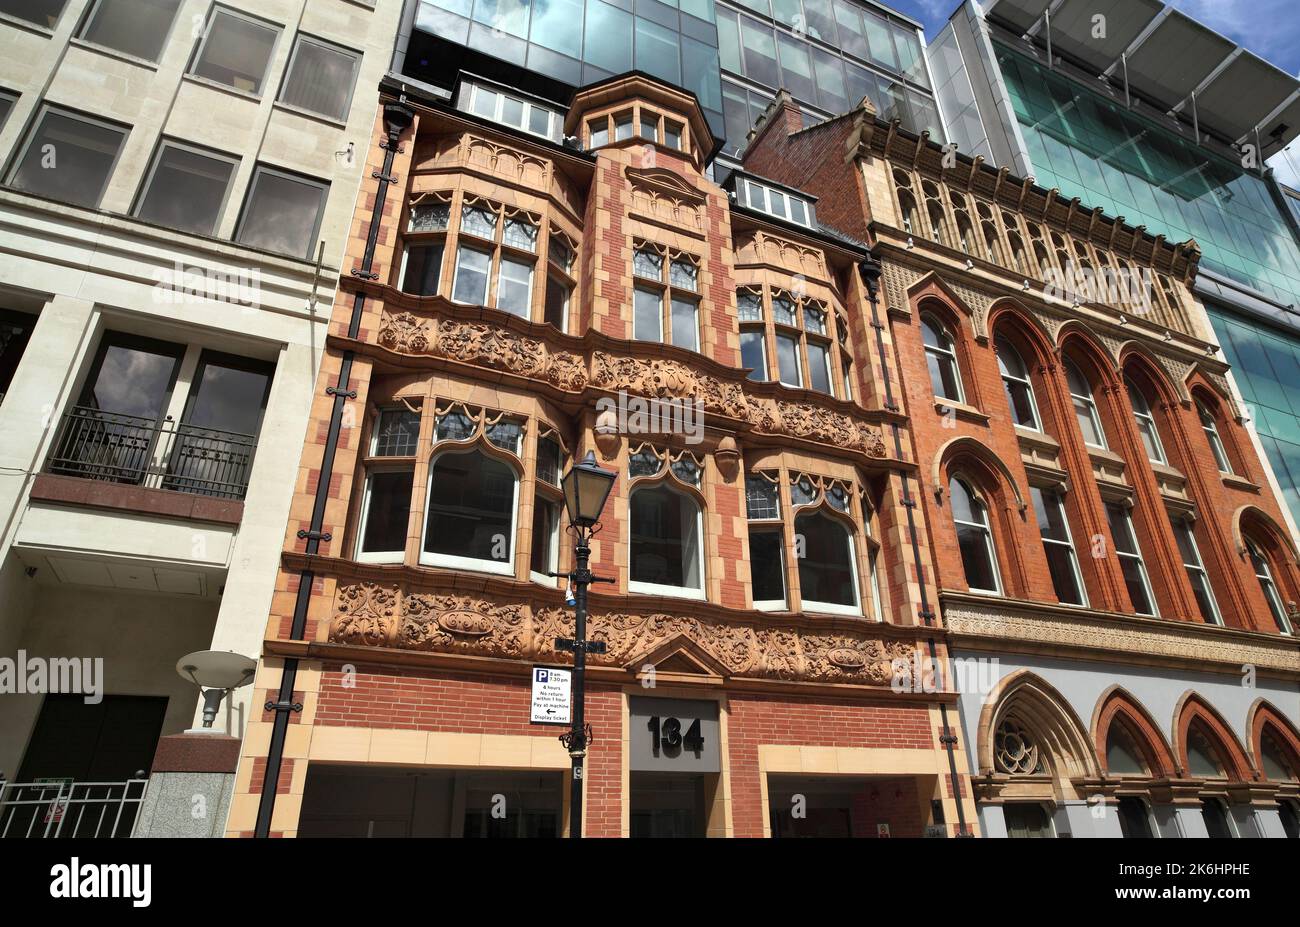 Style ancien et nouveau de l'architecture sur Edmund Street dans le centre-ville de Birmingham. Le 134, rue Edmund et le 138 (à droite) sont des bâtiments classés de catégorie II. Banque D'Images